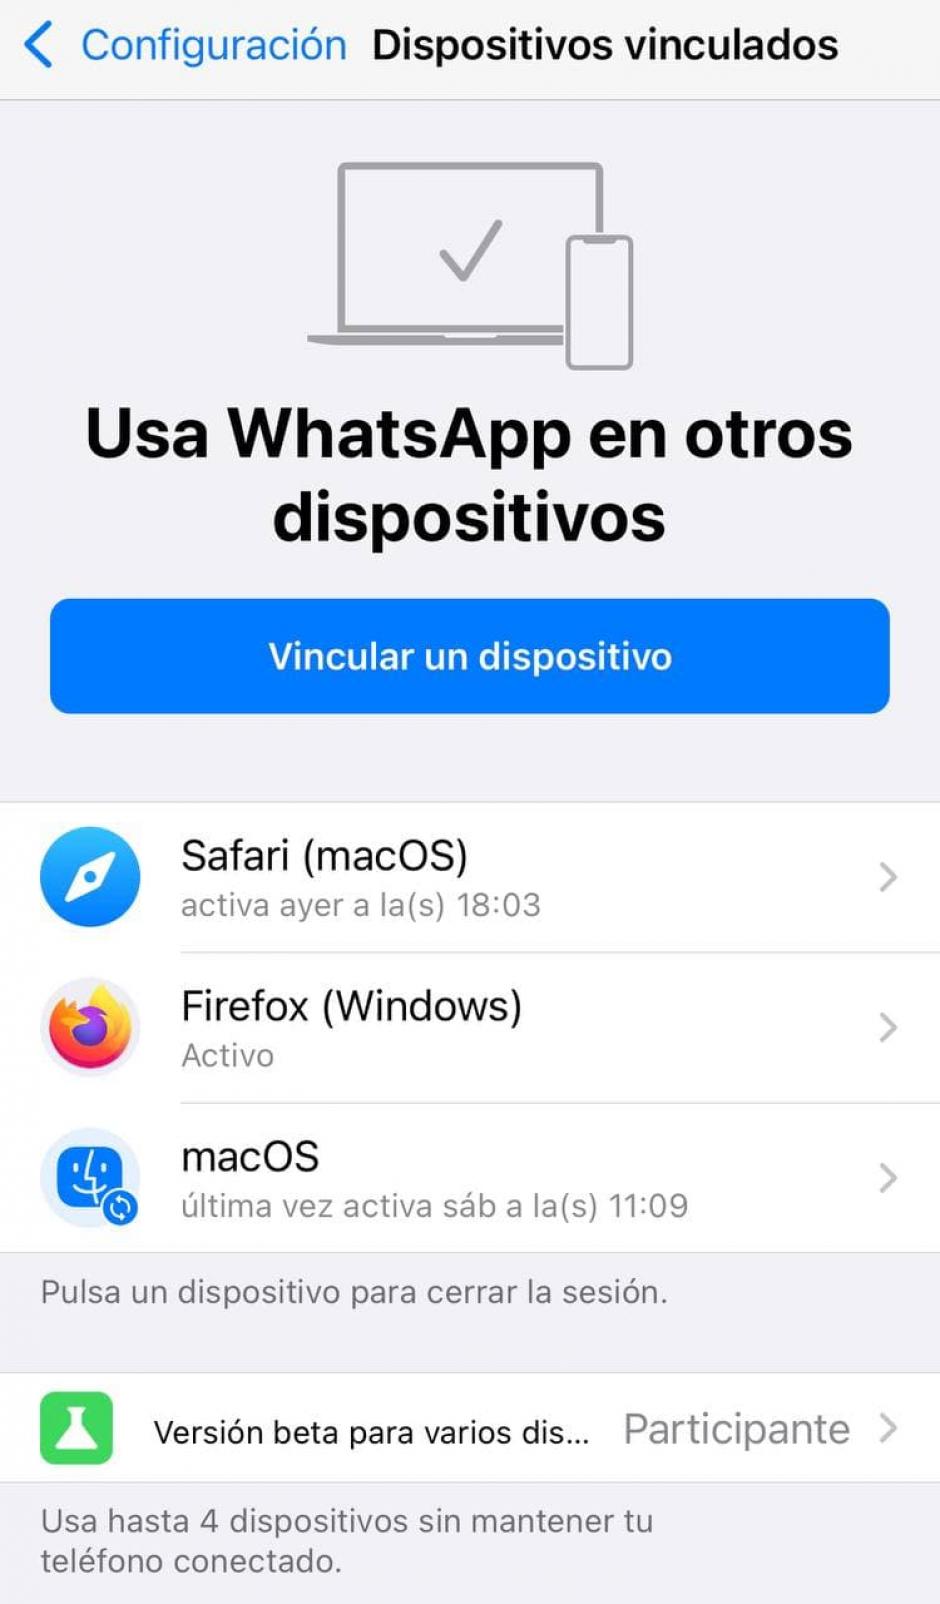 La beta de WhatsApp permite el uso en cuatro dispositivos